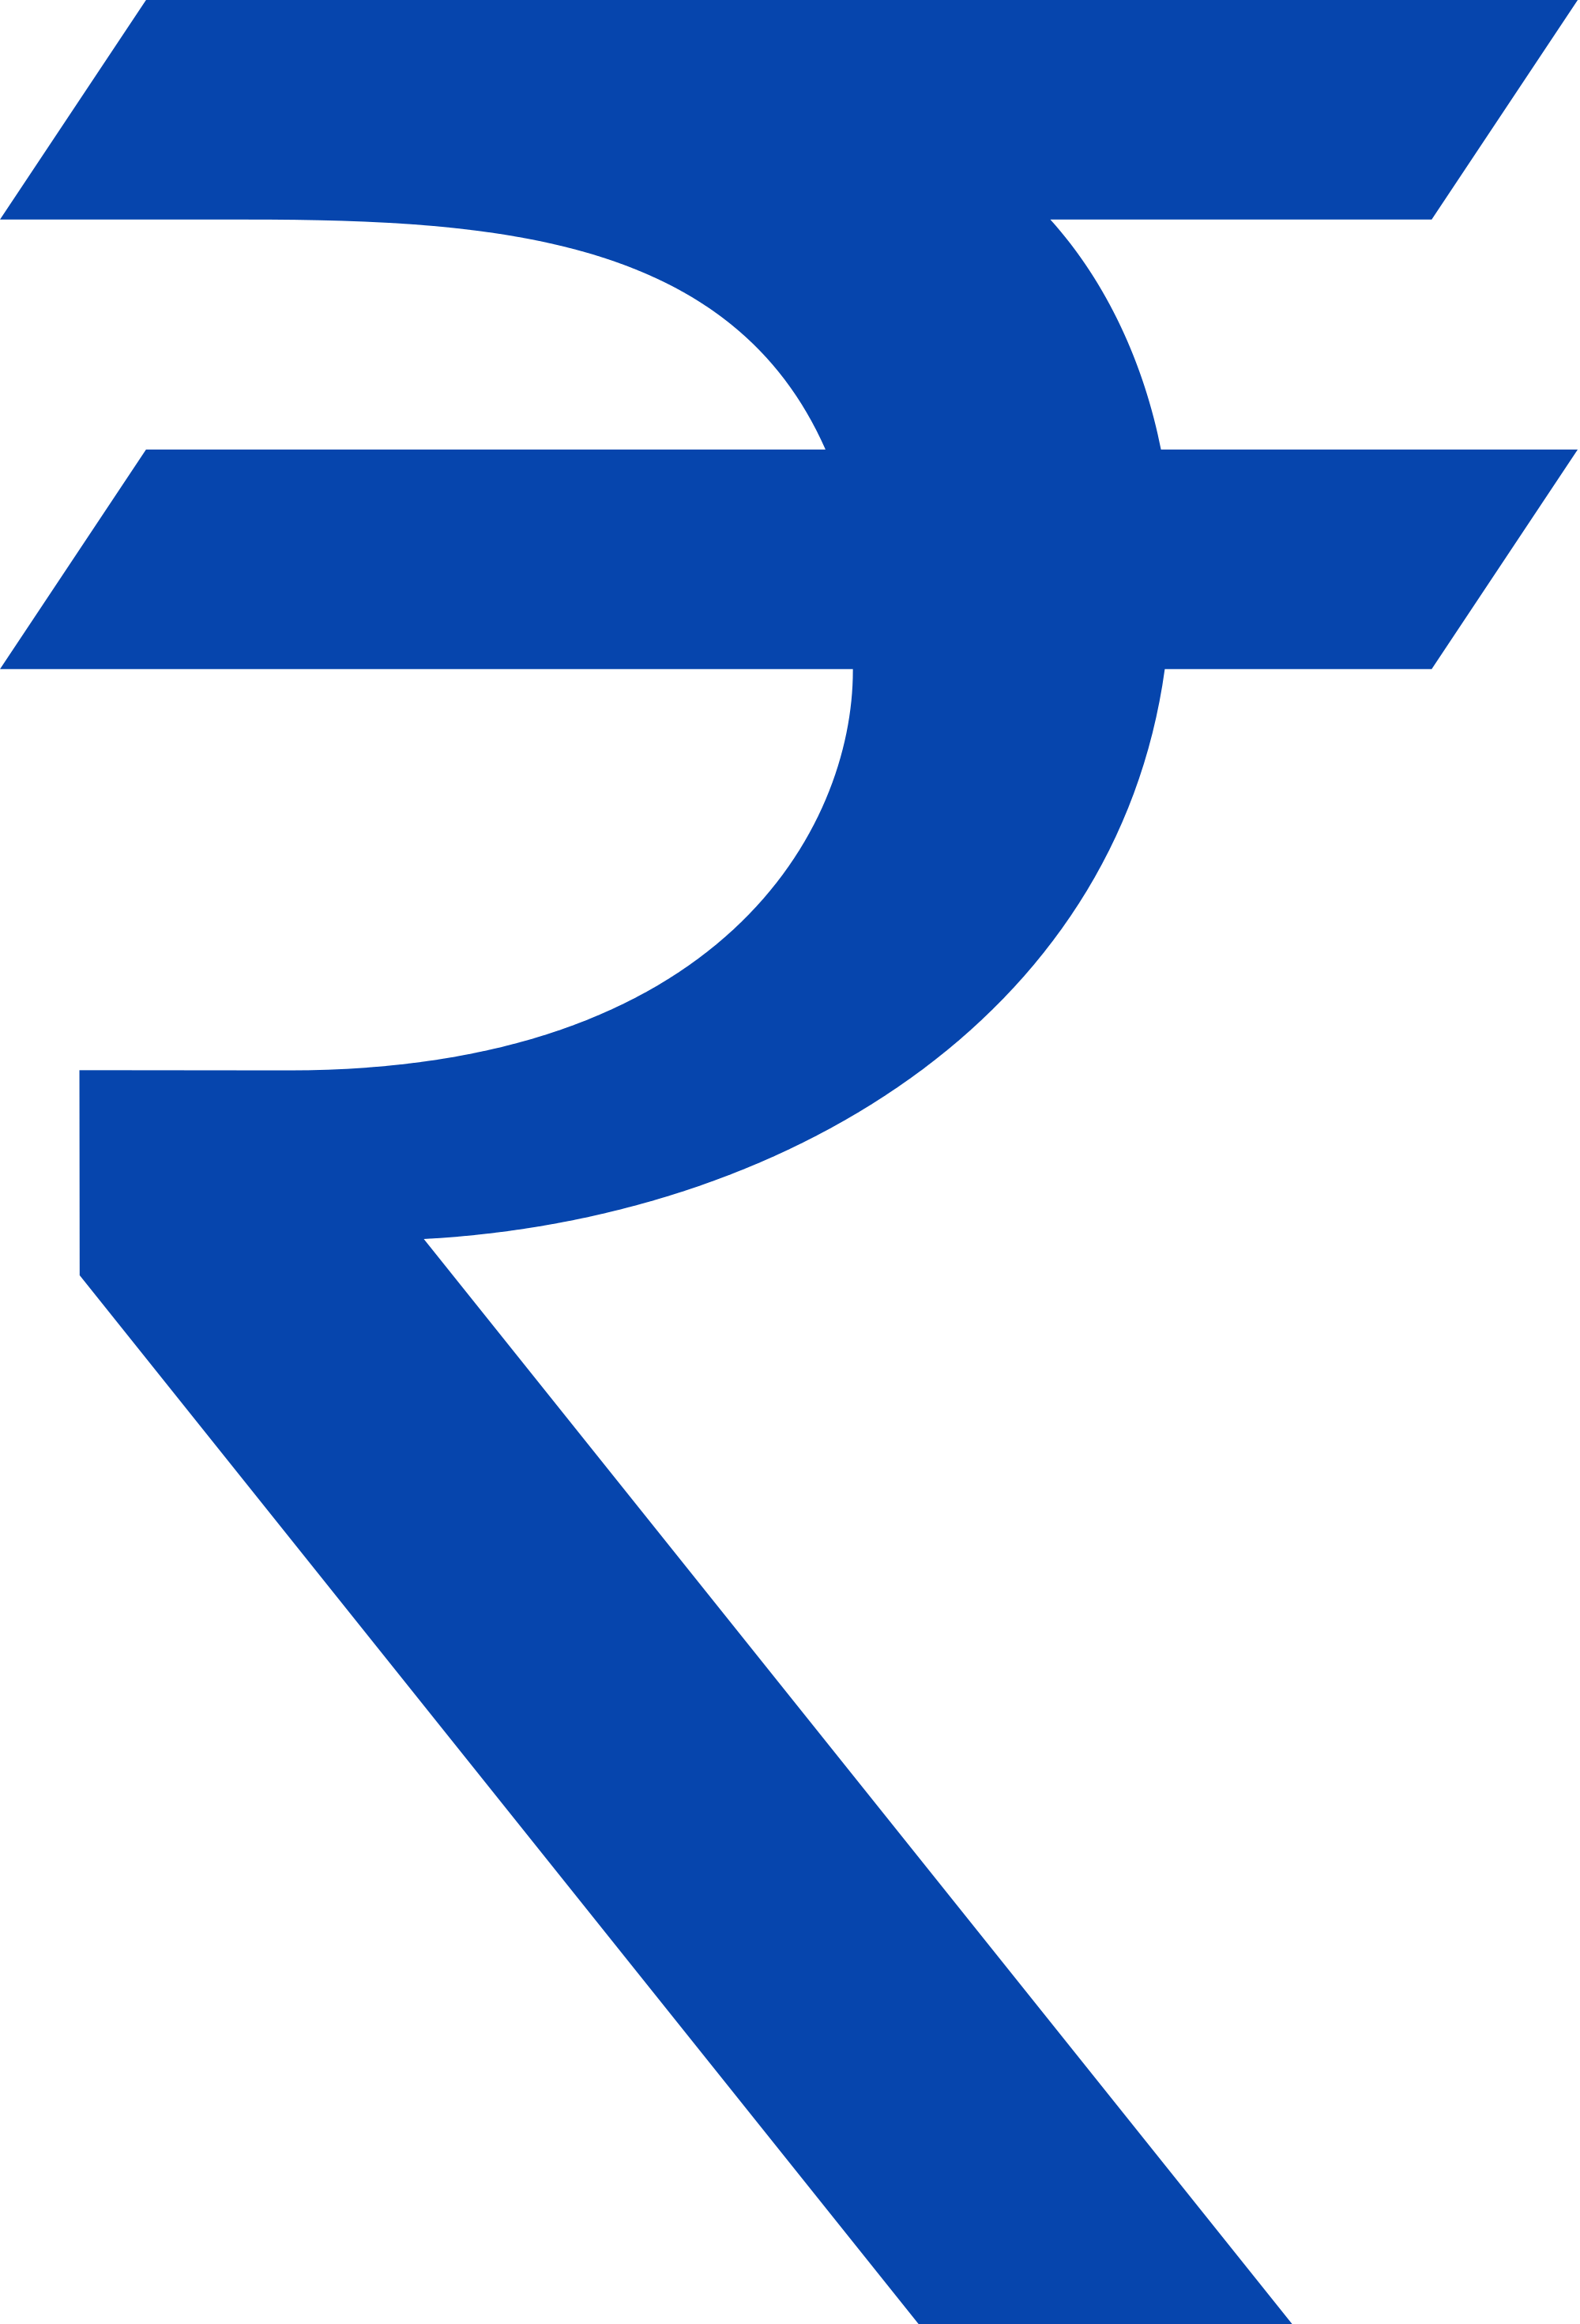 Rupee Symbol Png Photos - Indian Rupee Symbol Png (2000x2941)